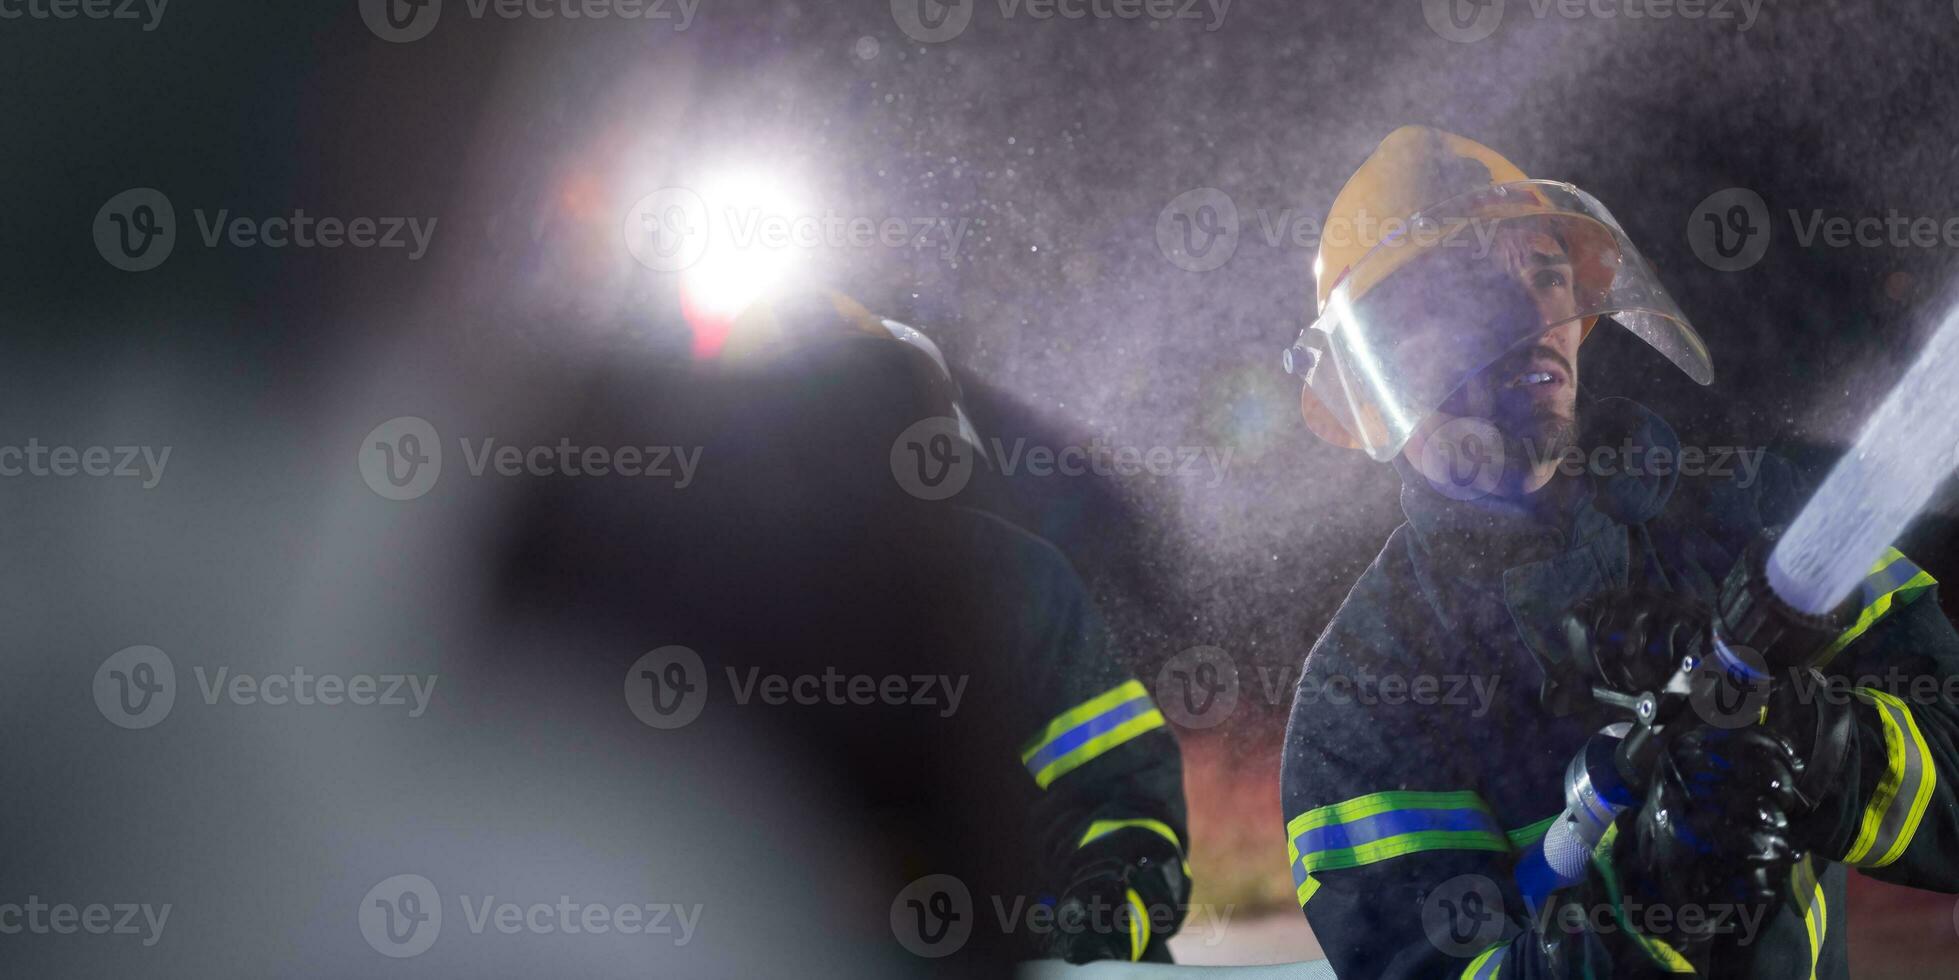 bomberos utilizando un agua manguera a eliminar un fuego peligro. equipo de hembra y masculino bomberos en peligroso rescate misión. foto